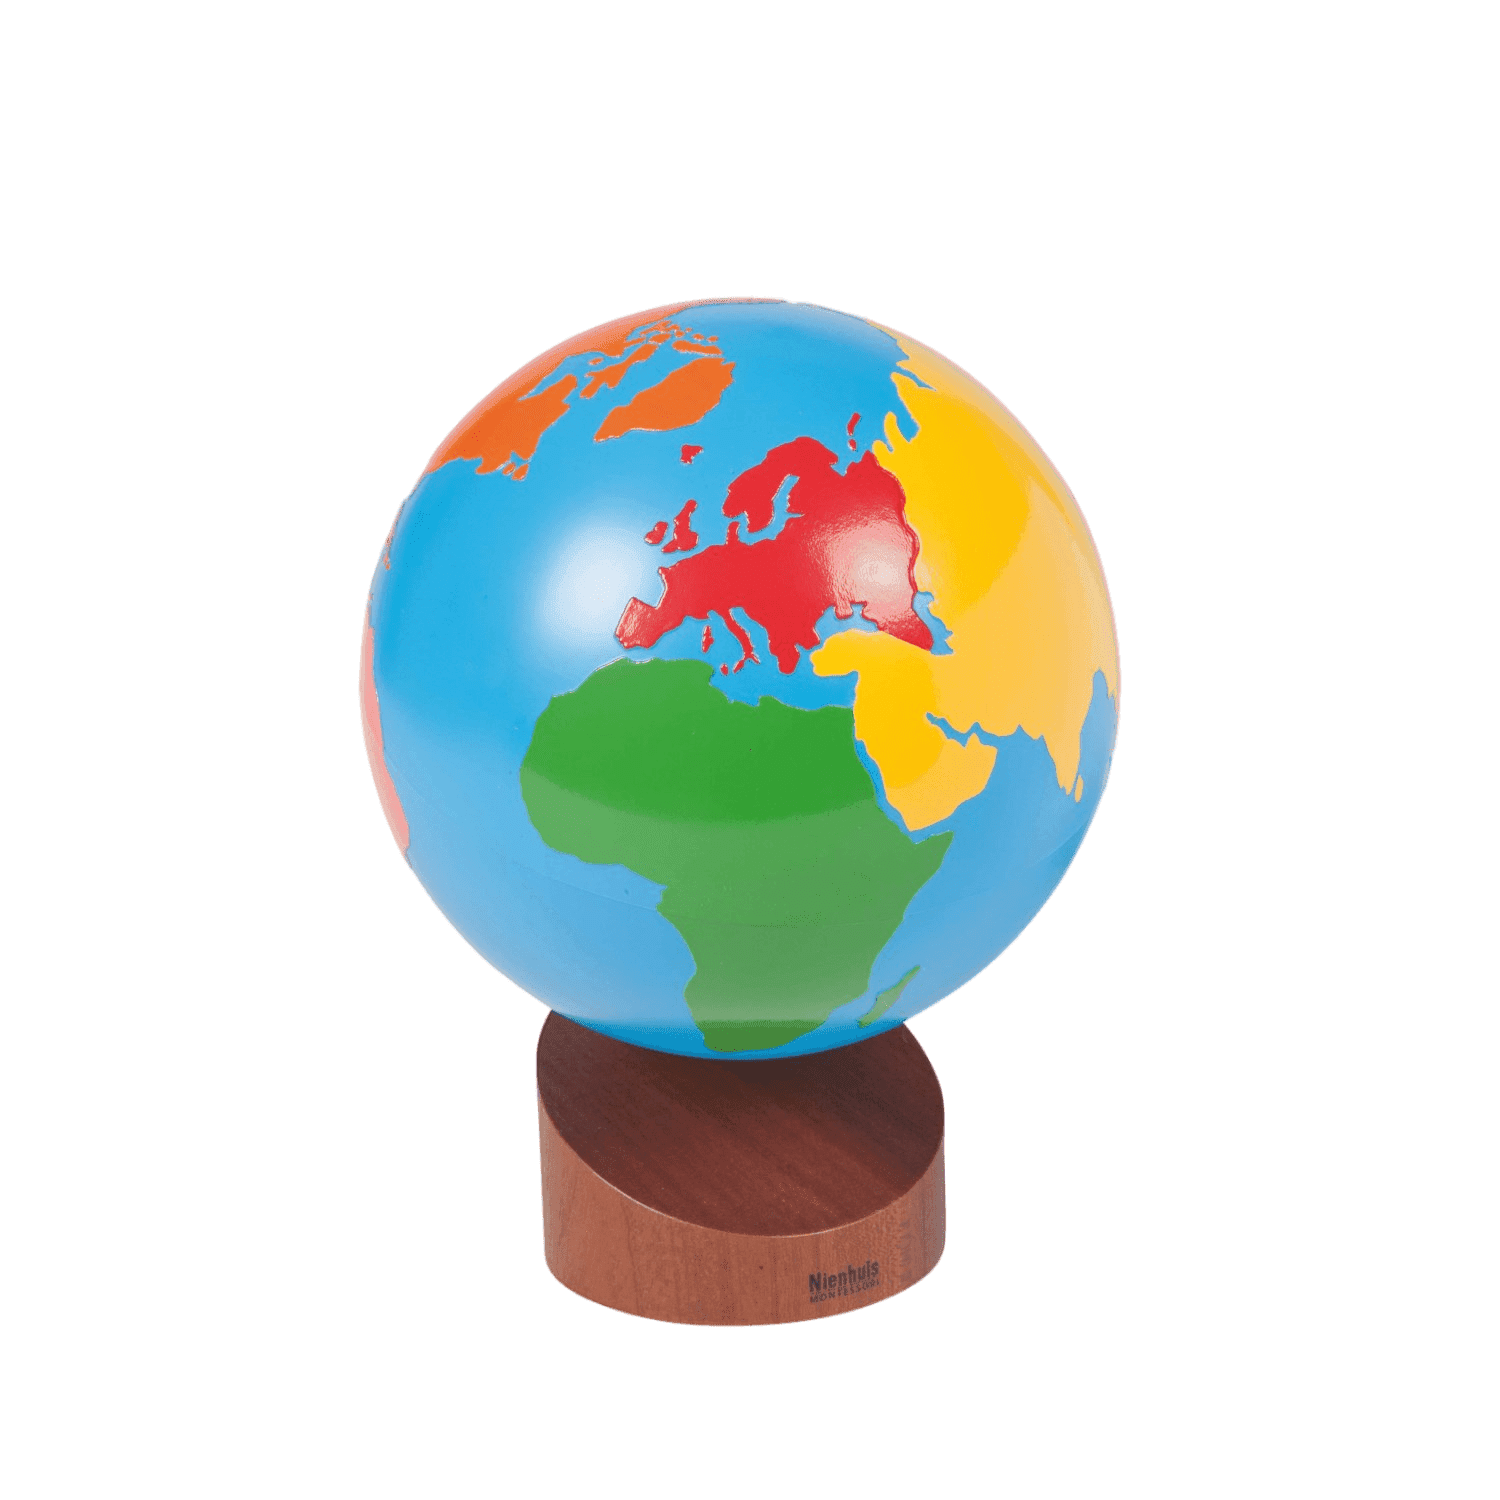 Montessori Nienhuis Montessori Globe of the Continents Colored